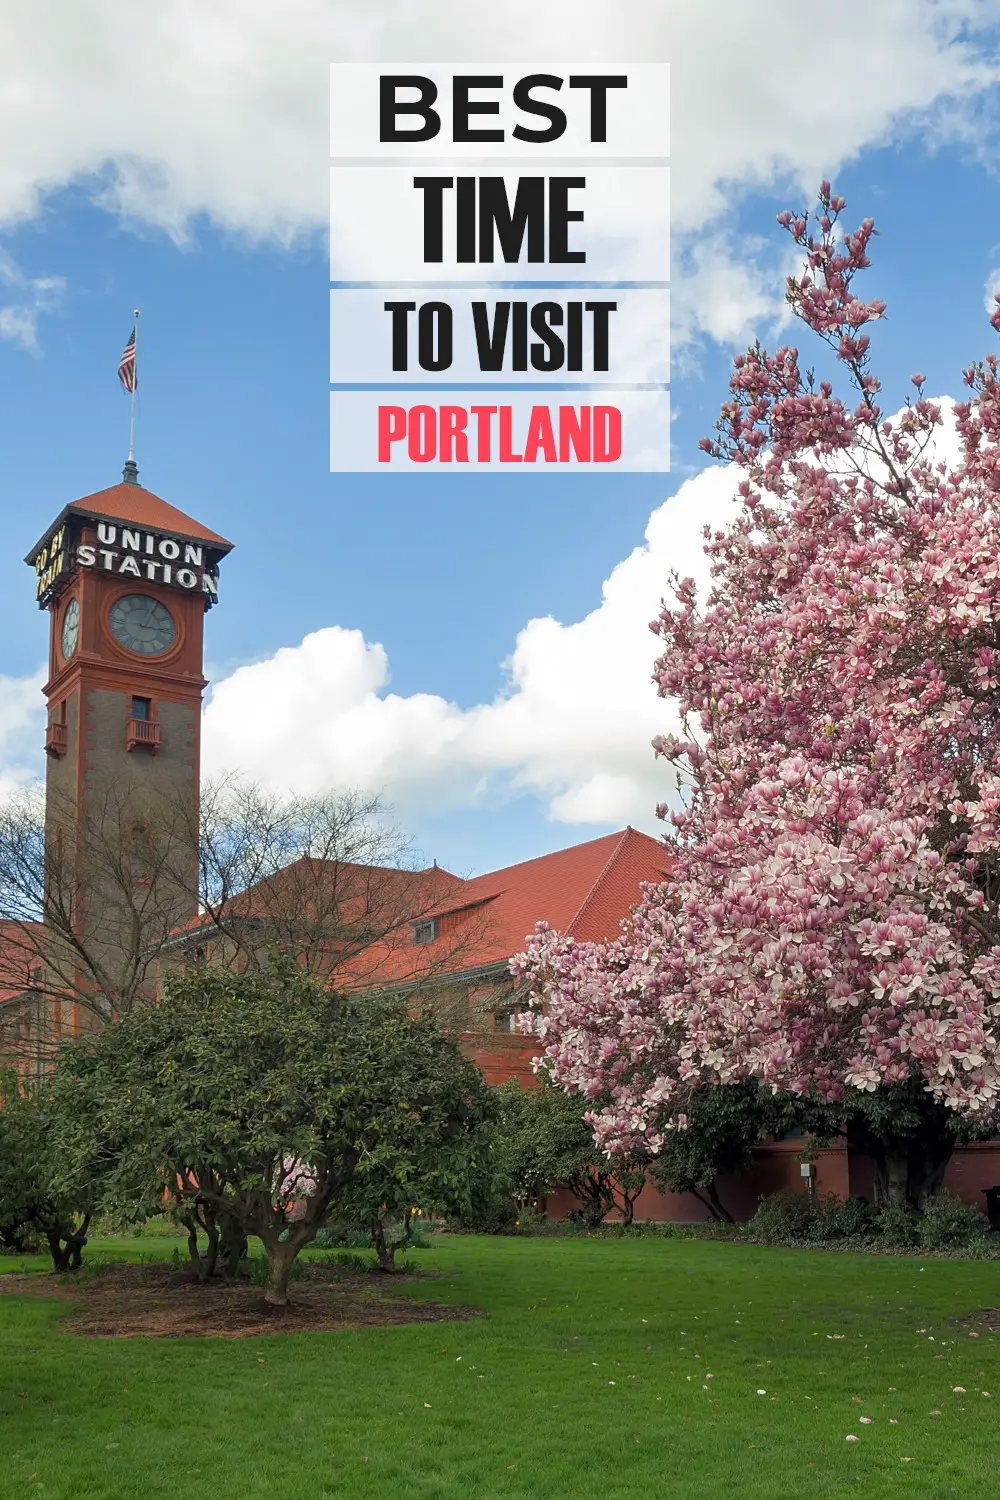 El mejor momento para visitar Portland: guía completa sobre cuándo debe ir según el clima, las cosas que hacer y los eventos